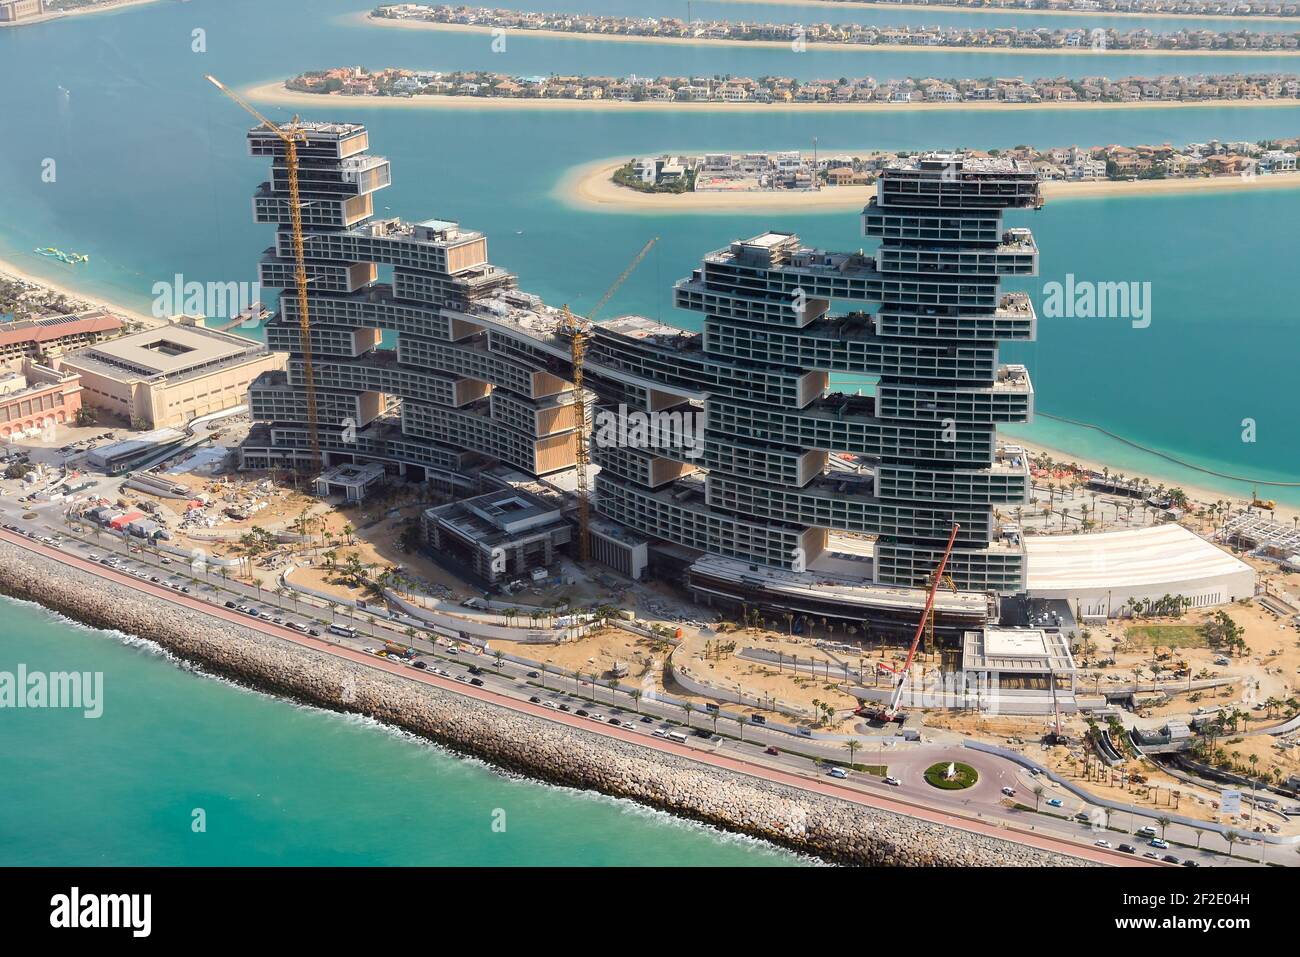 Das Royal Atlantis Resort & Residences befindet sich im Bau auf der Palm, Dubai, Vereinigte Arabische Emirate. Baumaßnahmen in Palm Jumeirah. Stockfoto